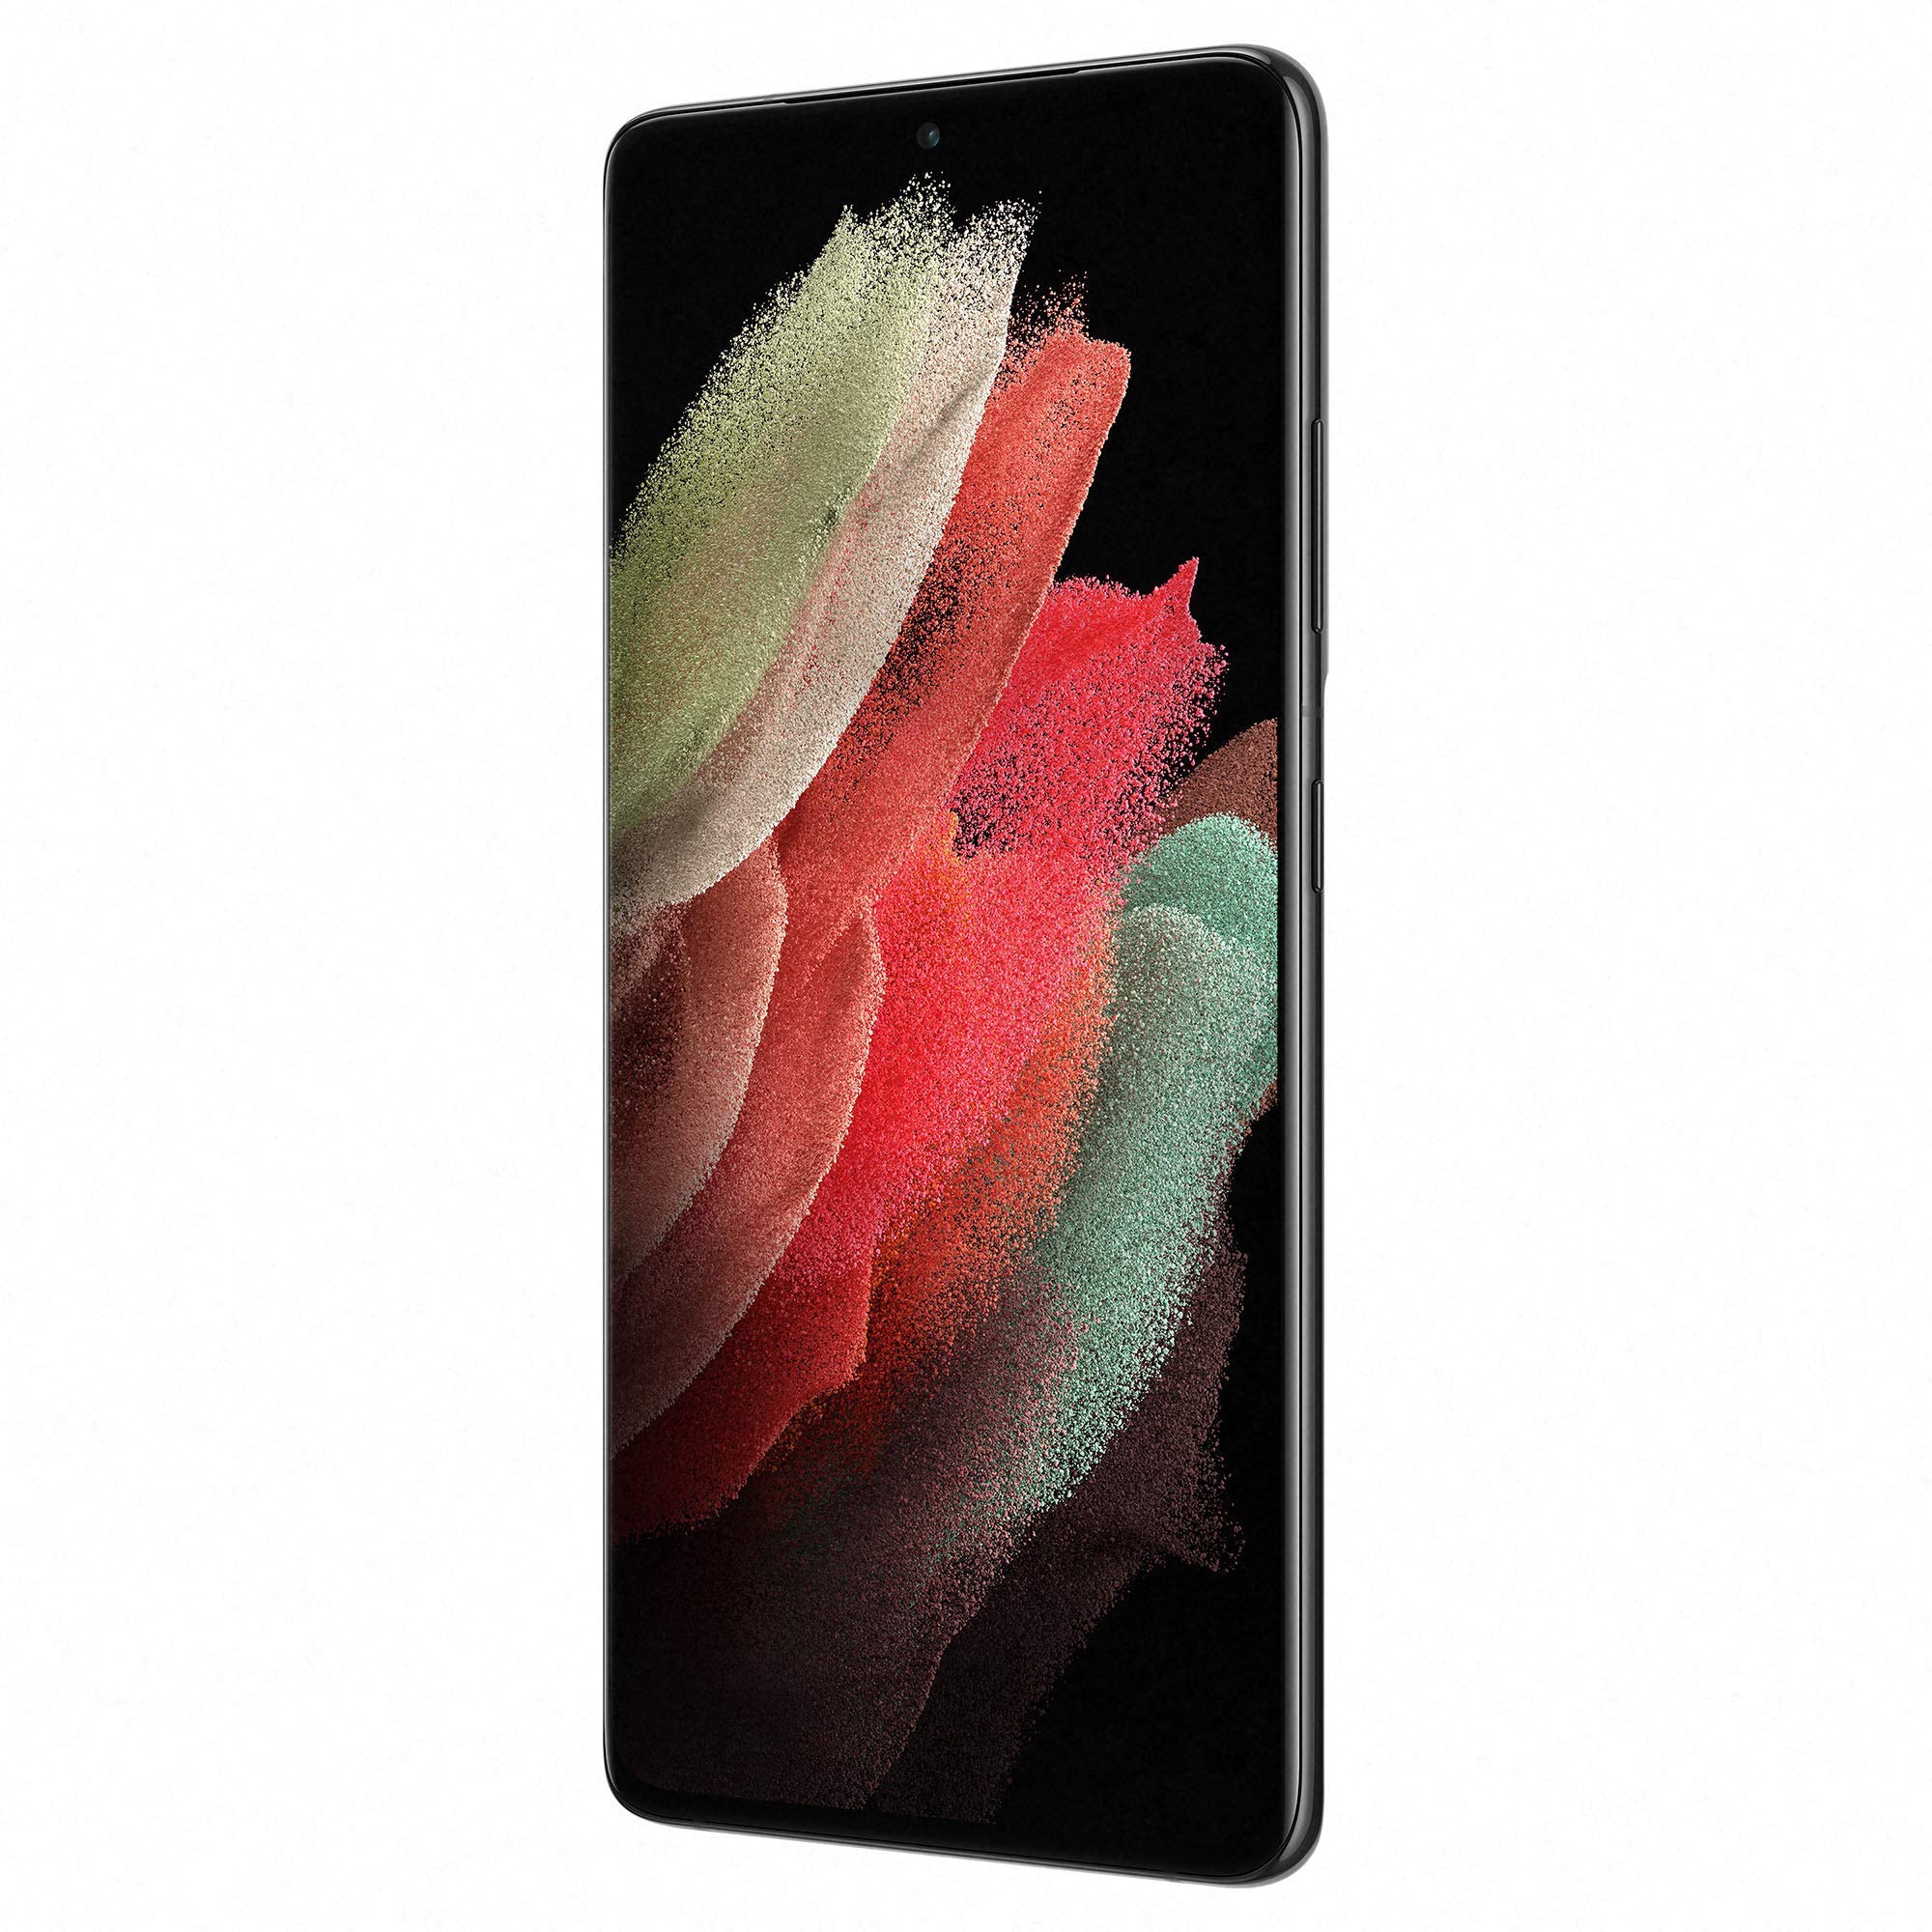 Samsung Galaxy S21 Ultra 5G 256GB Black - Amazon (Renewed)